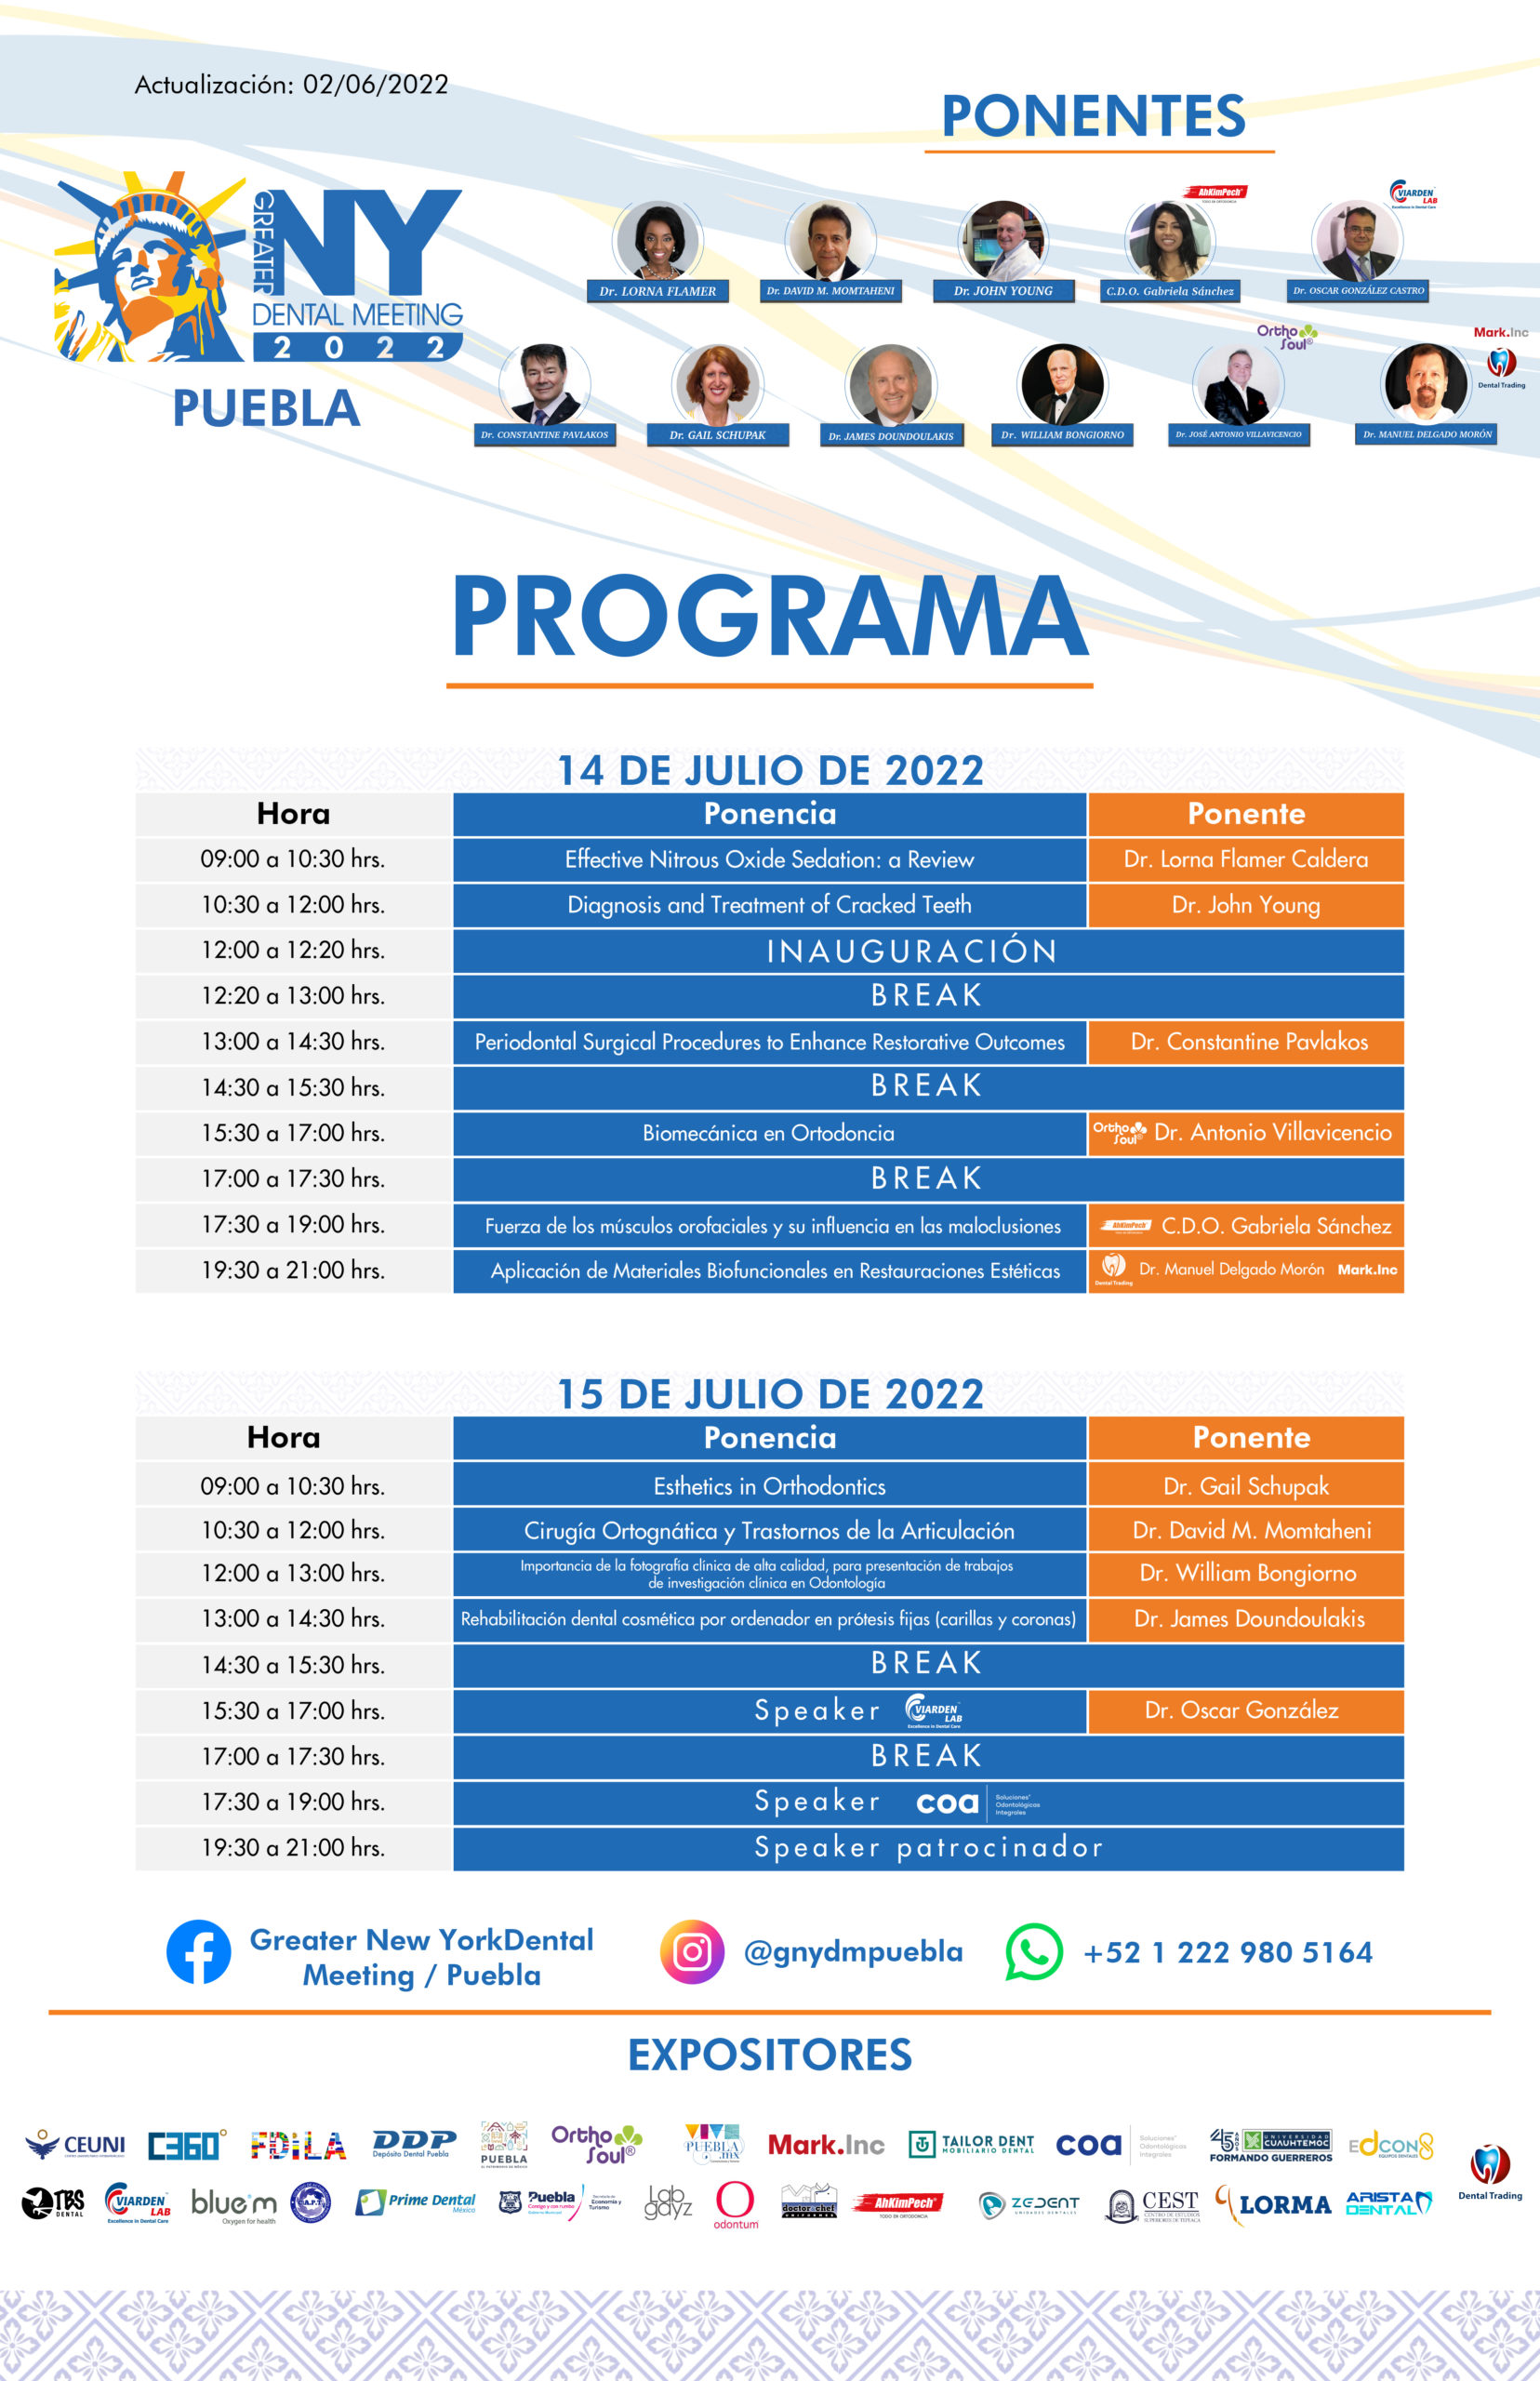 GNYDM Puebla Programa 02 06 2022 ViardenLab